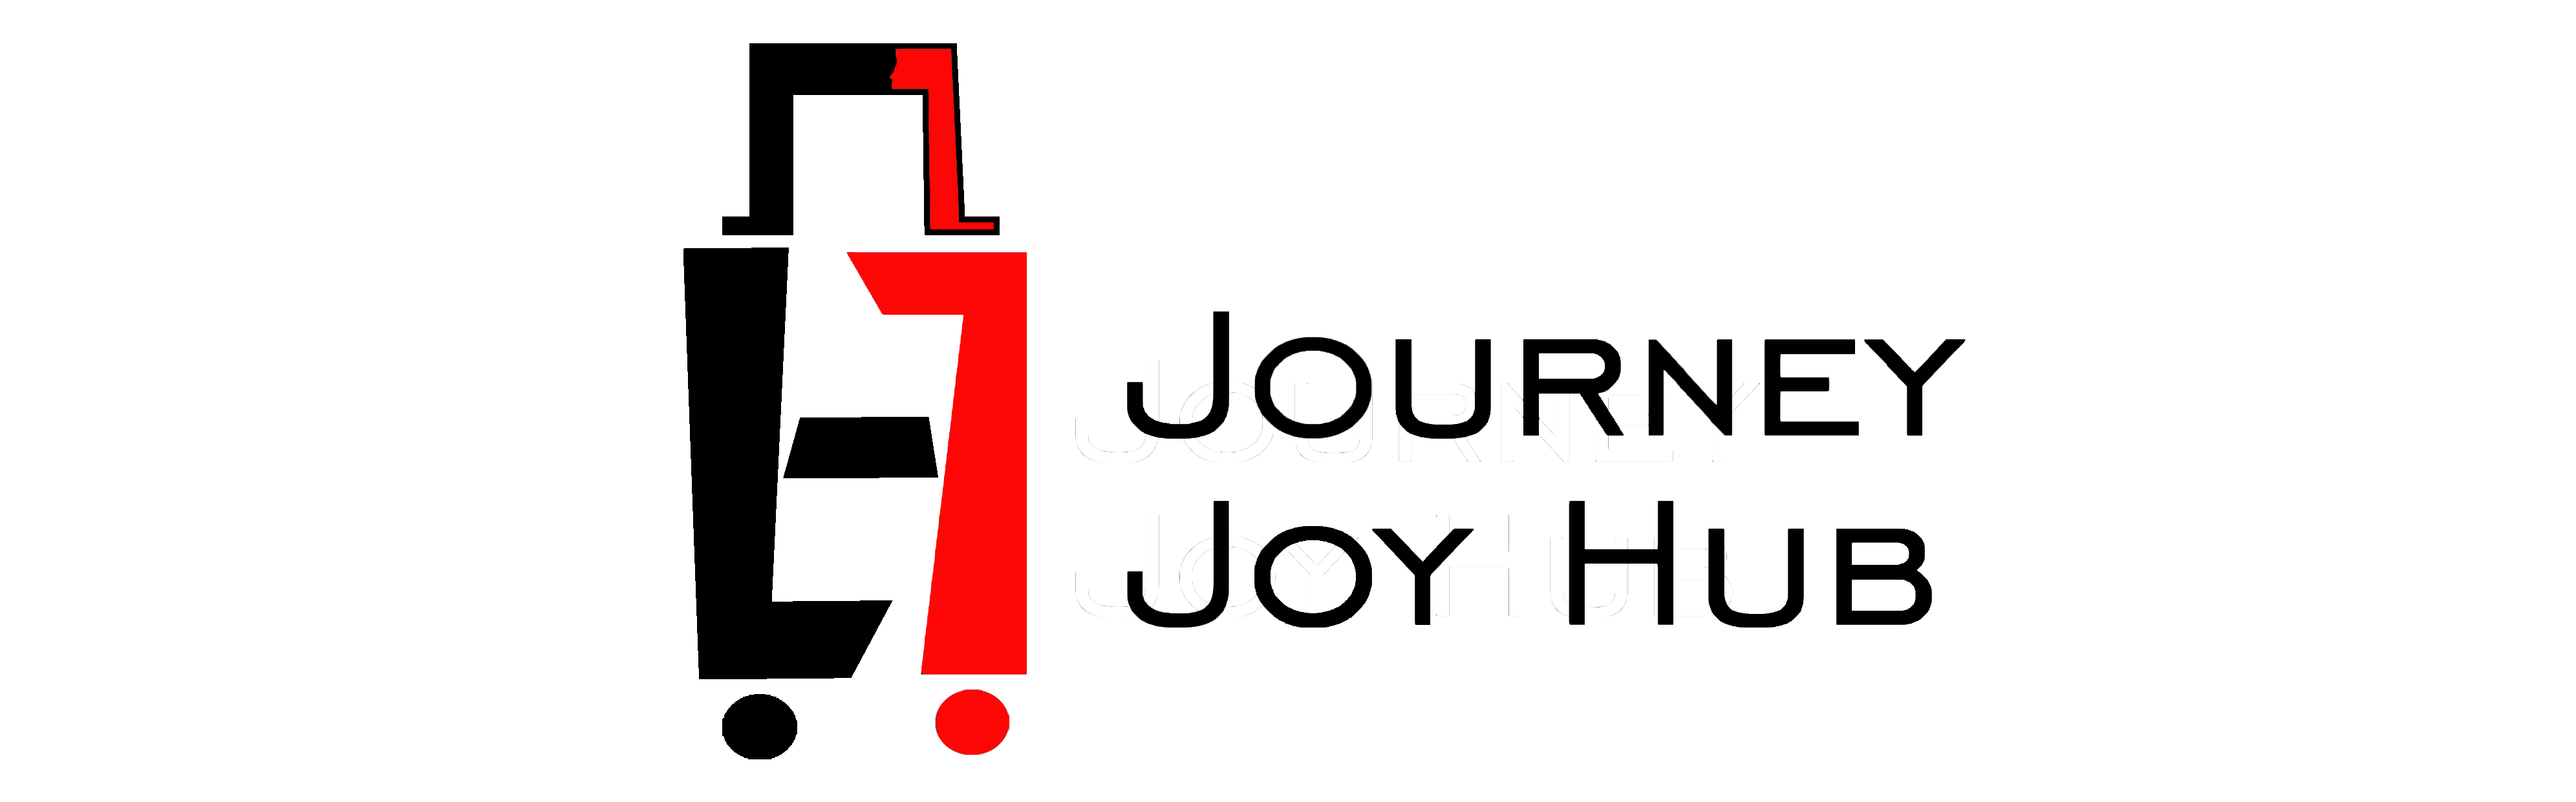 Journeyjoyhub logo